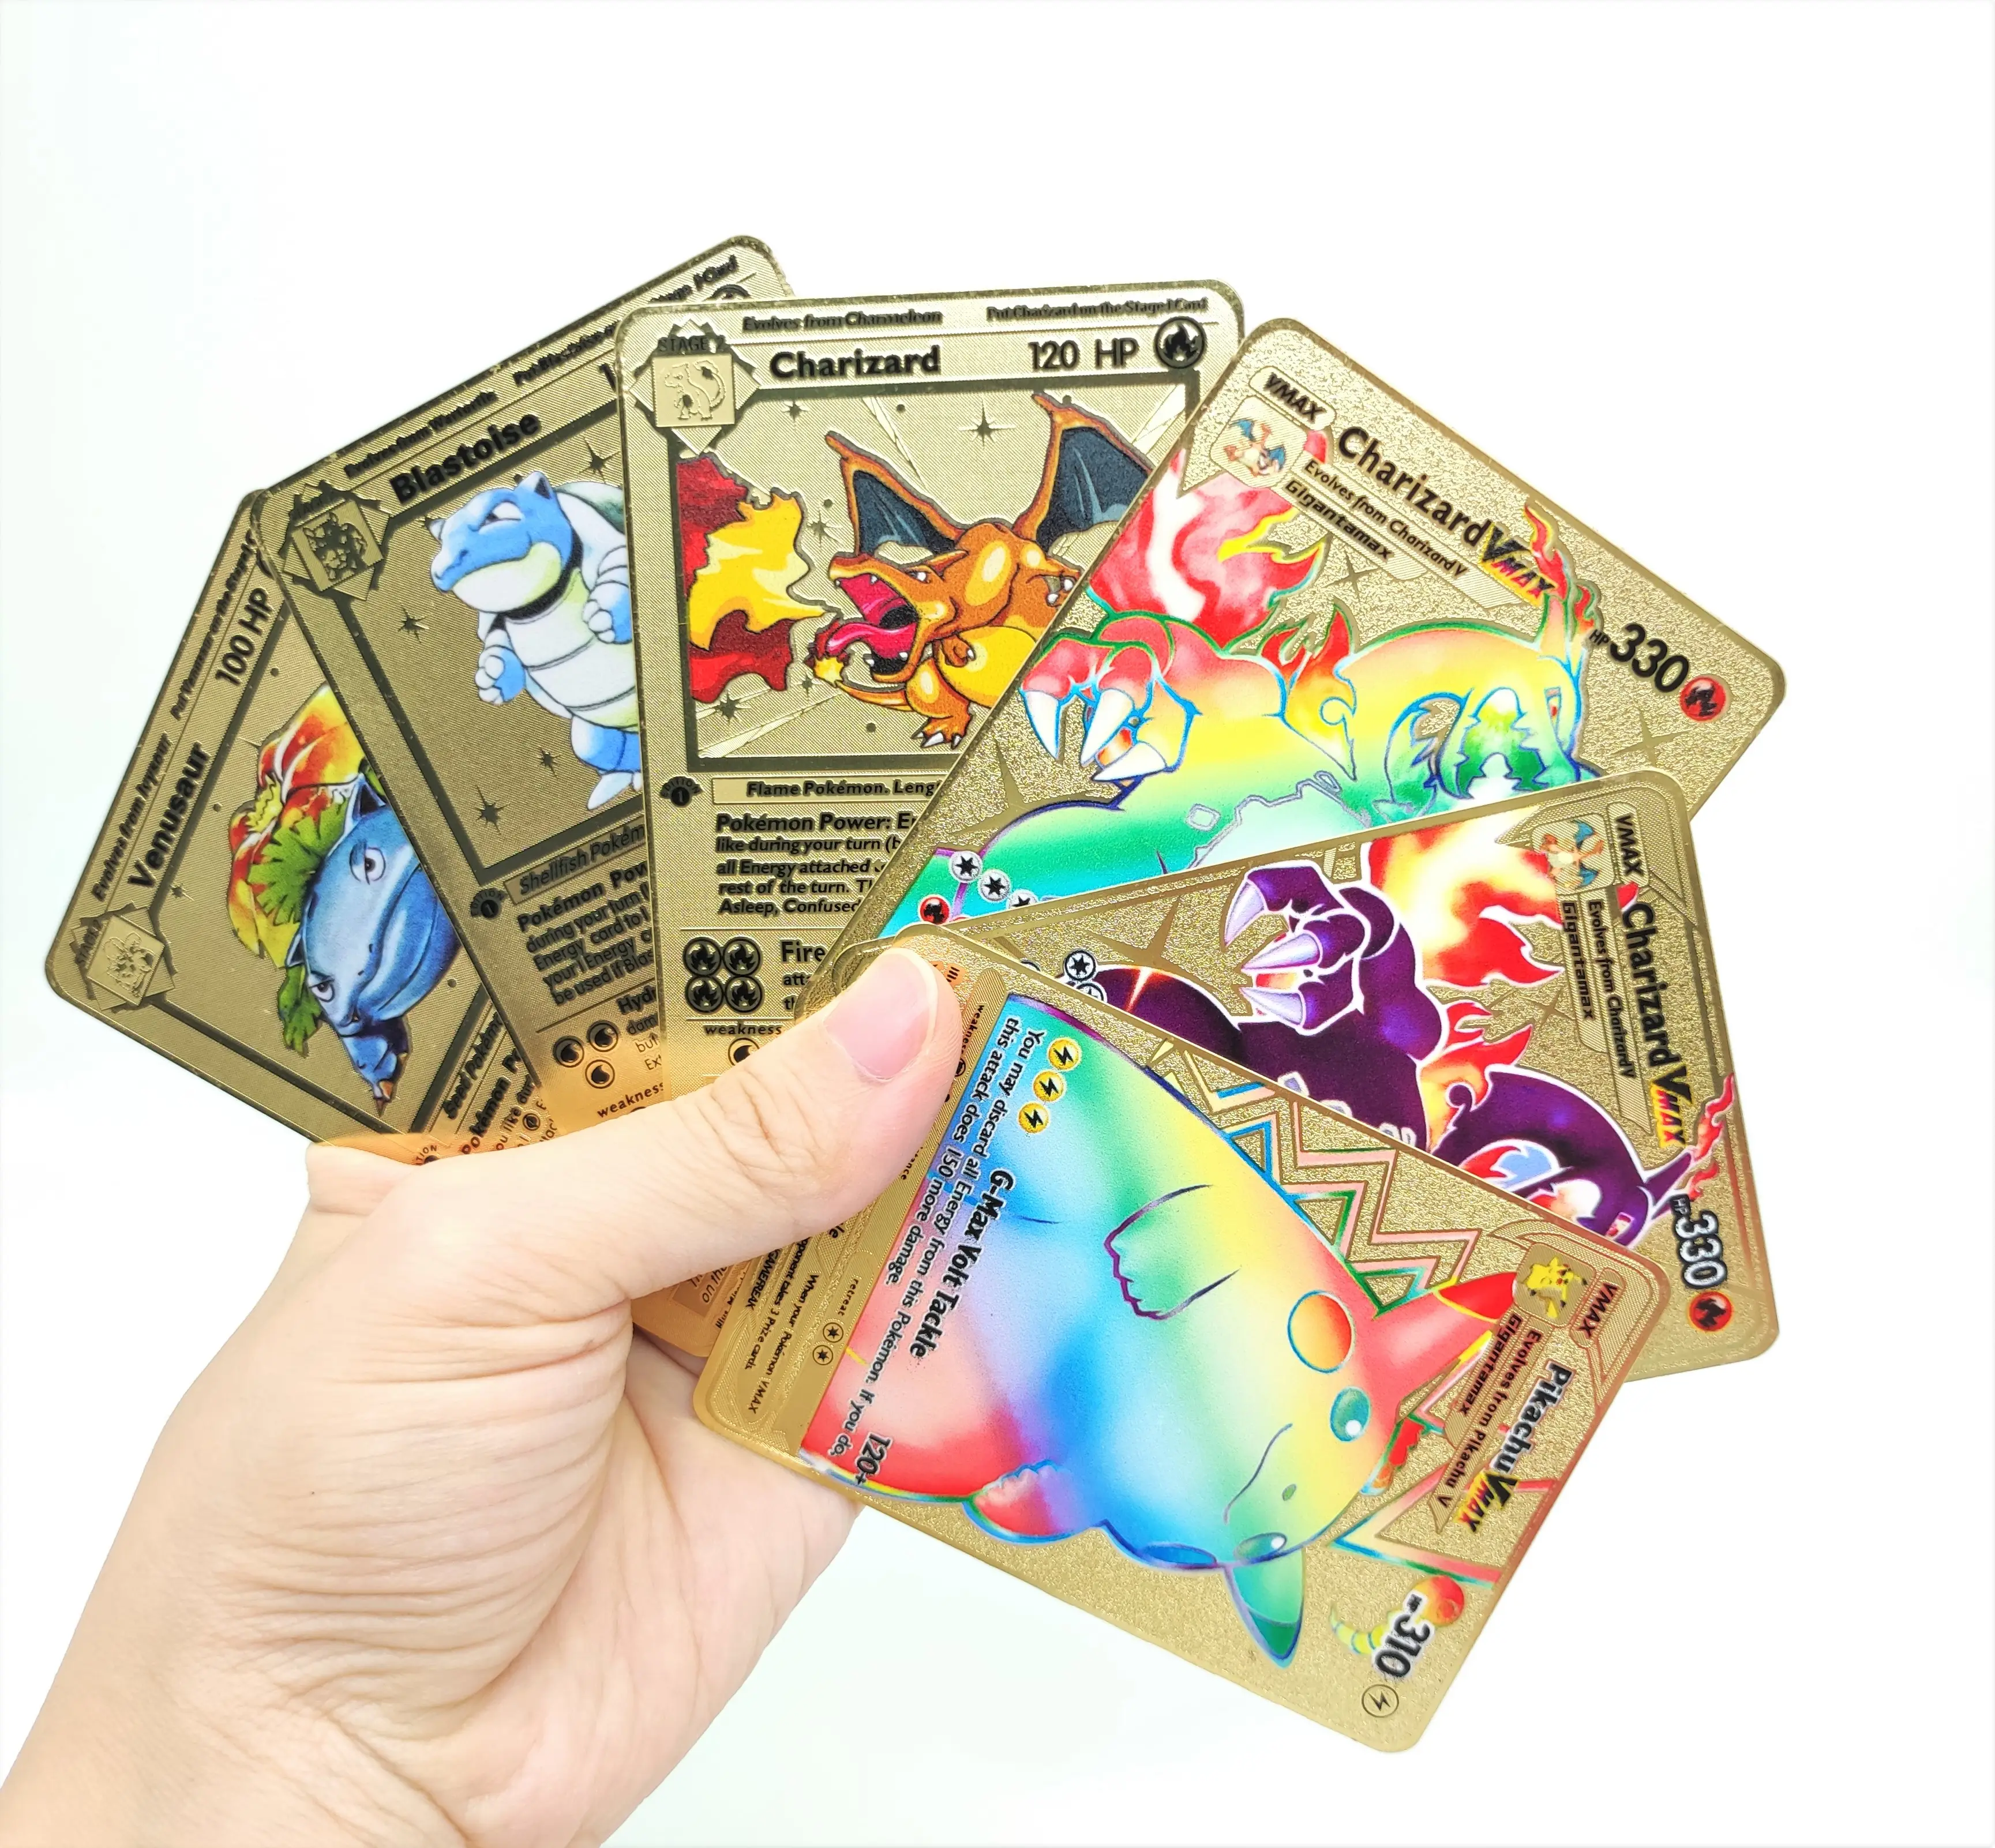 Neue Kinder Kinder Gold Spanisch Spiel Metal icas Charizard Vmax Gx Sammlung Fall Spielzeug für Metall Pokemon Sammel karte